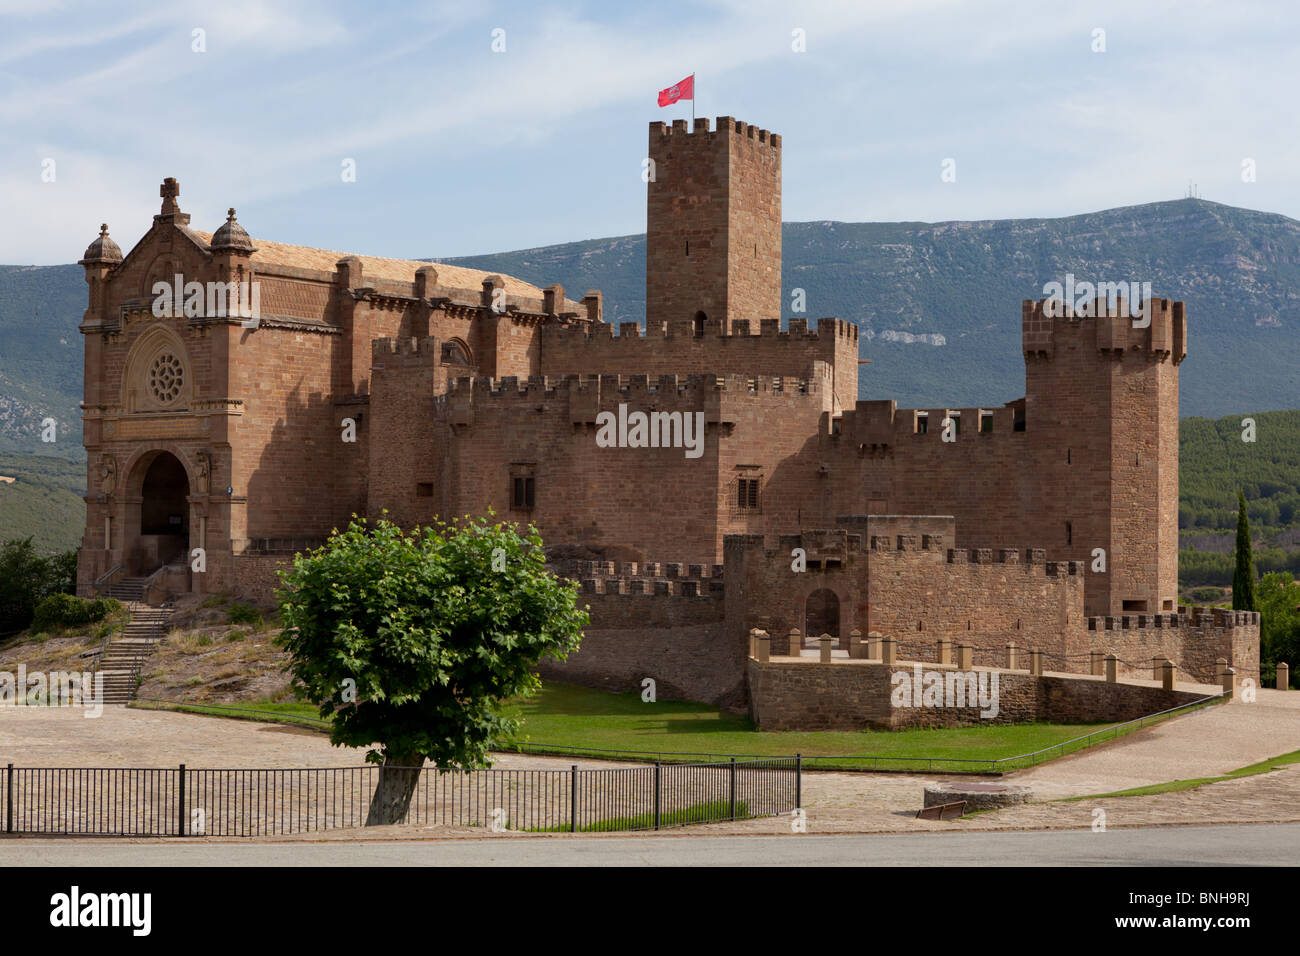 El castillo de Javier, en la provincia de Navarra - País Vasco de España. Famoso por ser el lugar de nacimiento de San Francisco Javier. Foto de stock